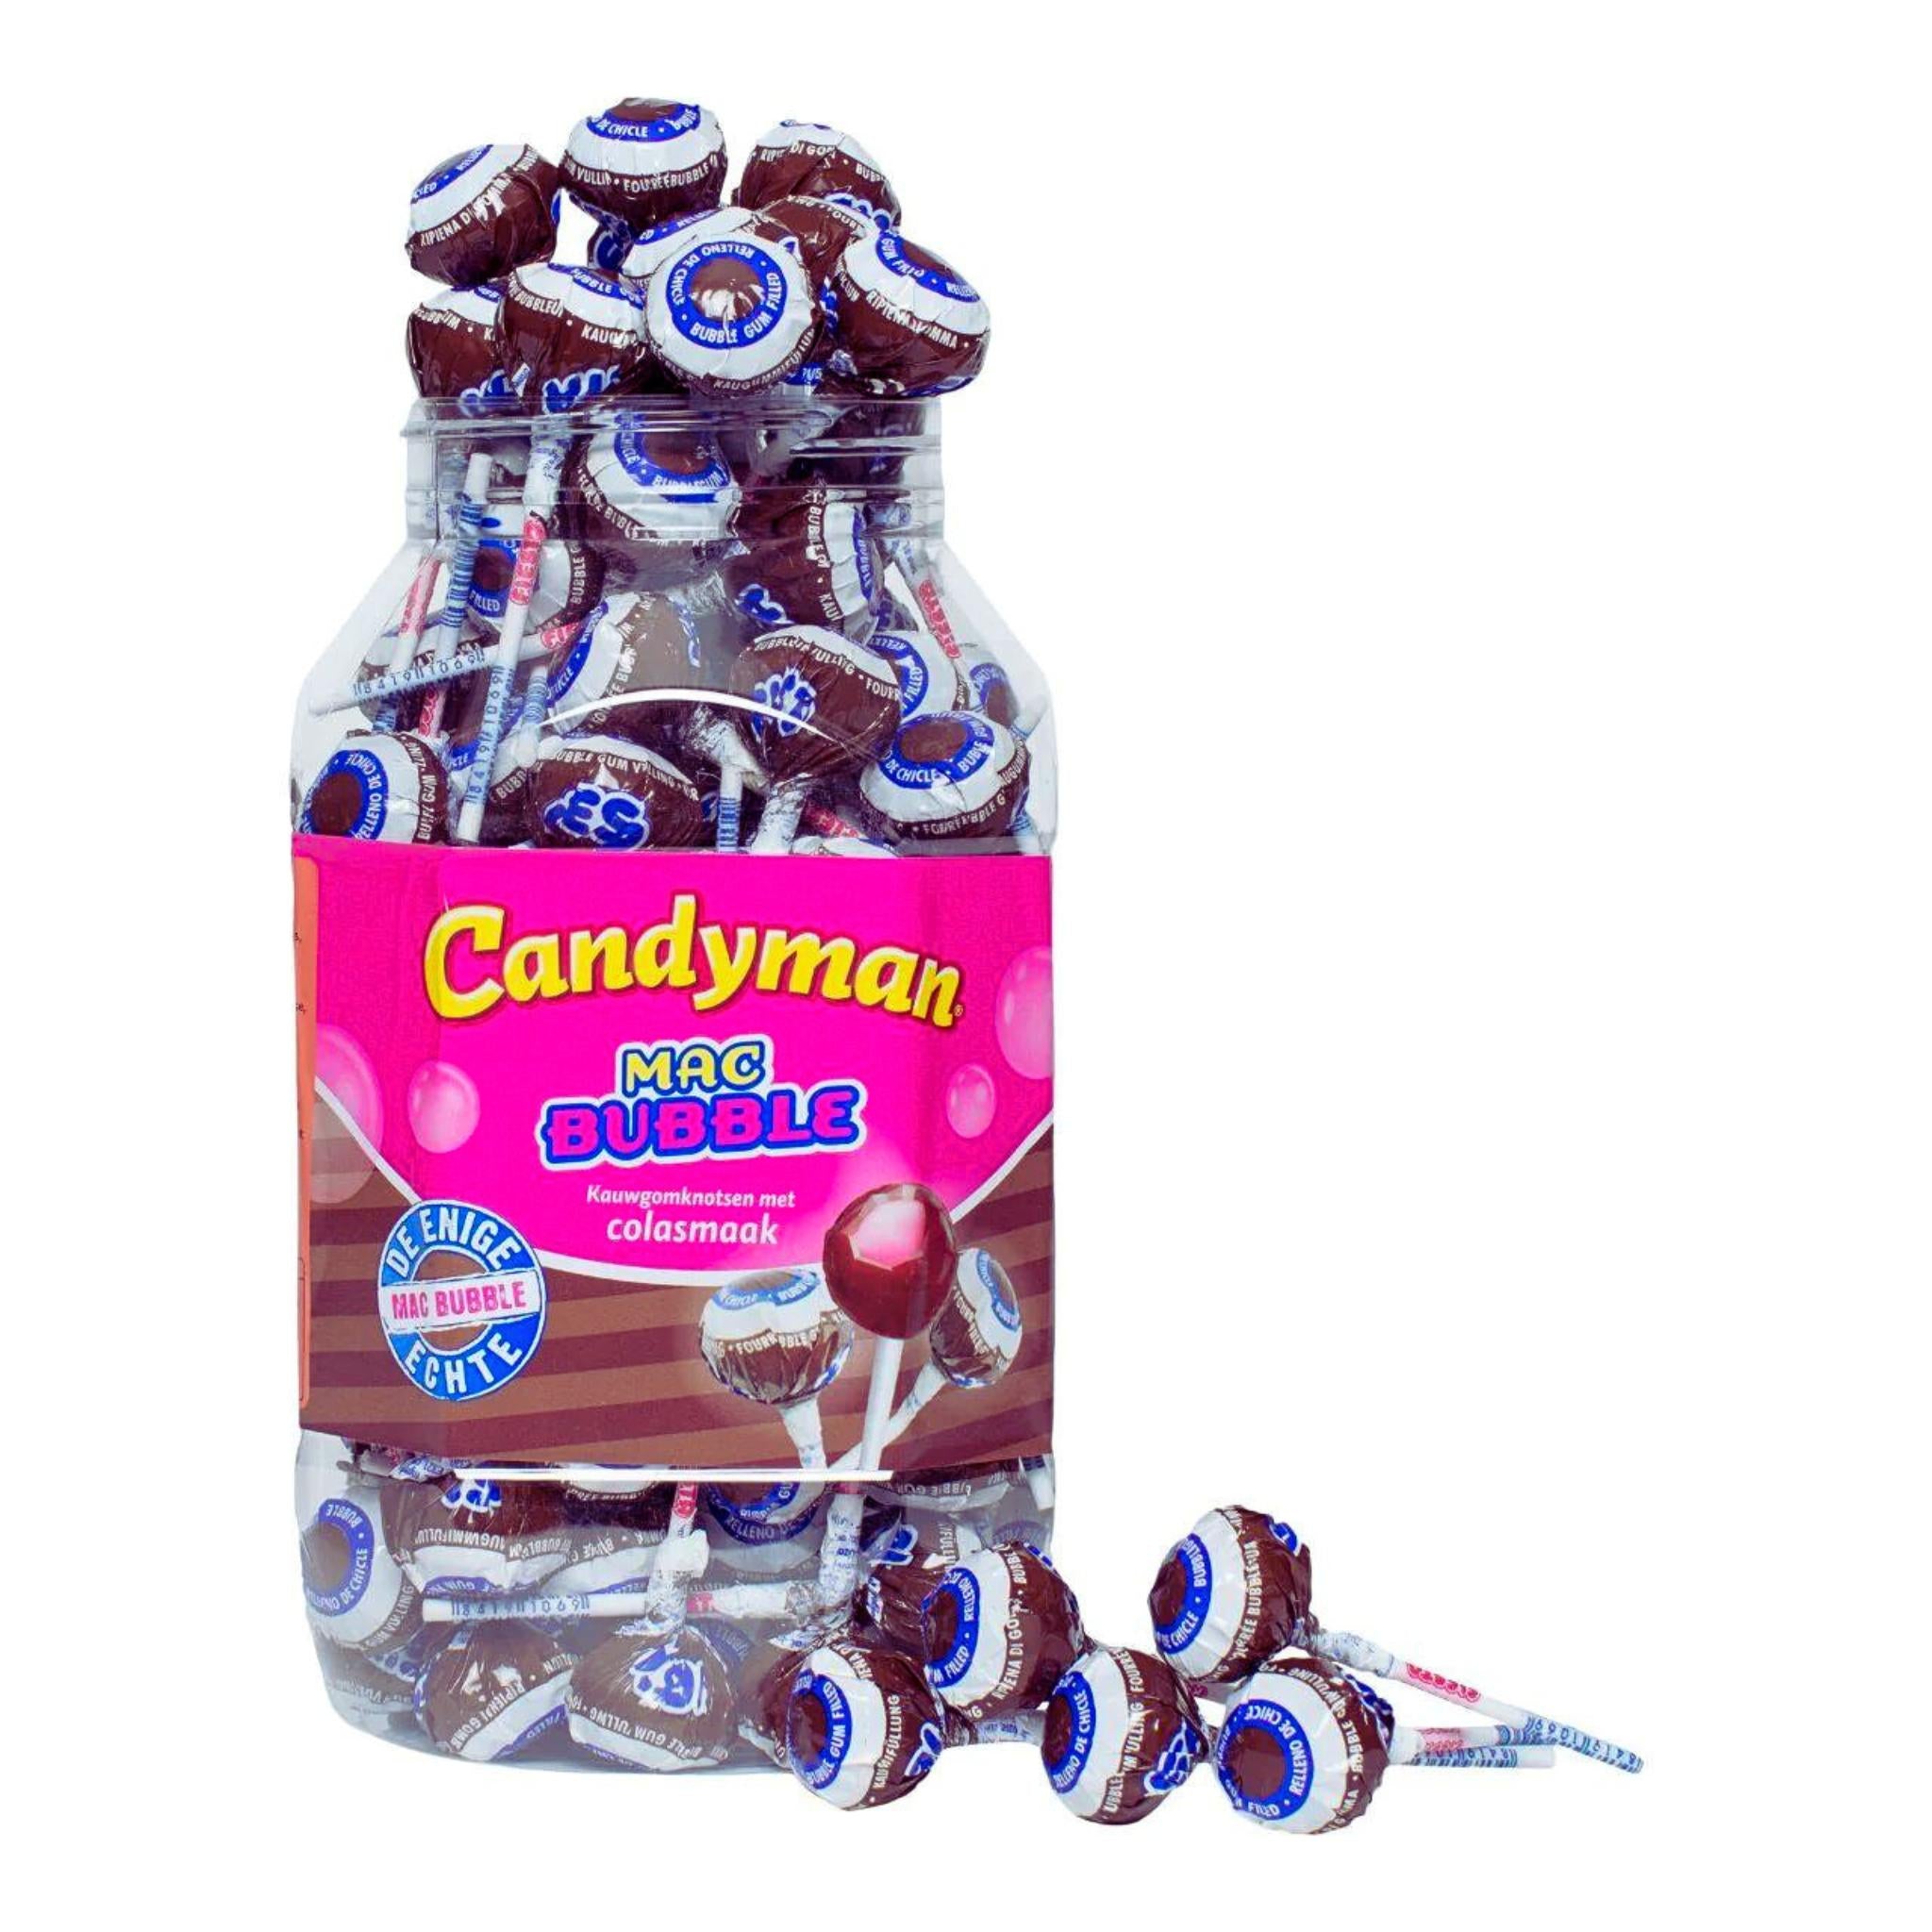 Candyman Mac Bubble Cola - 15g